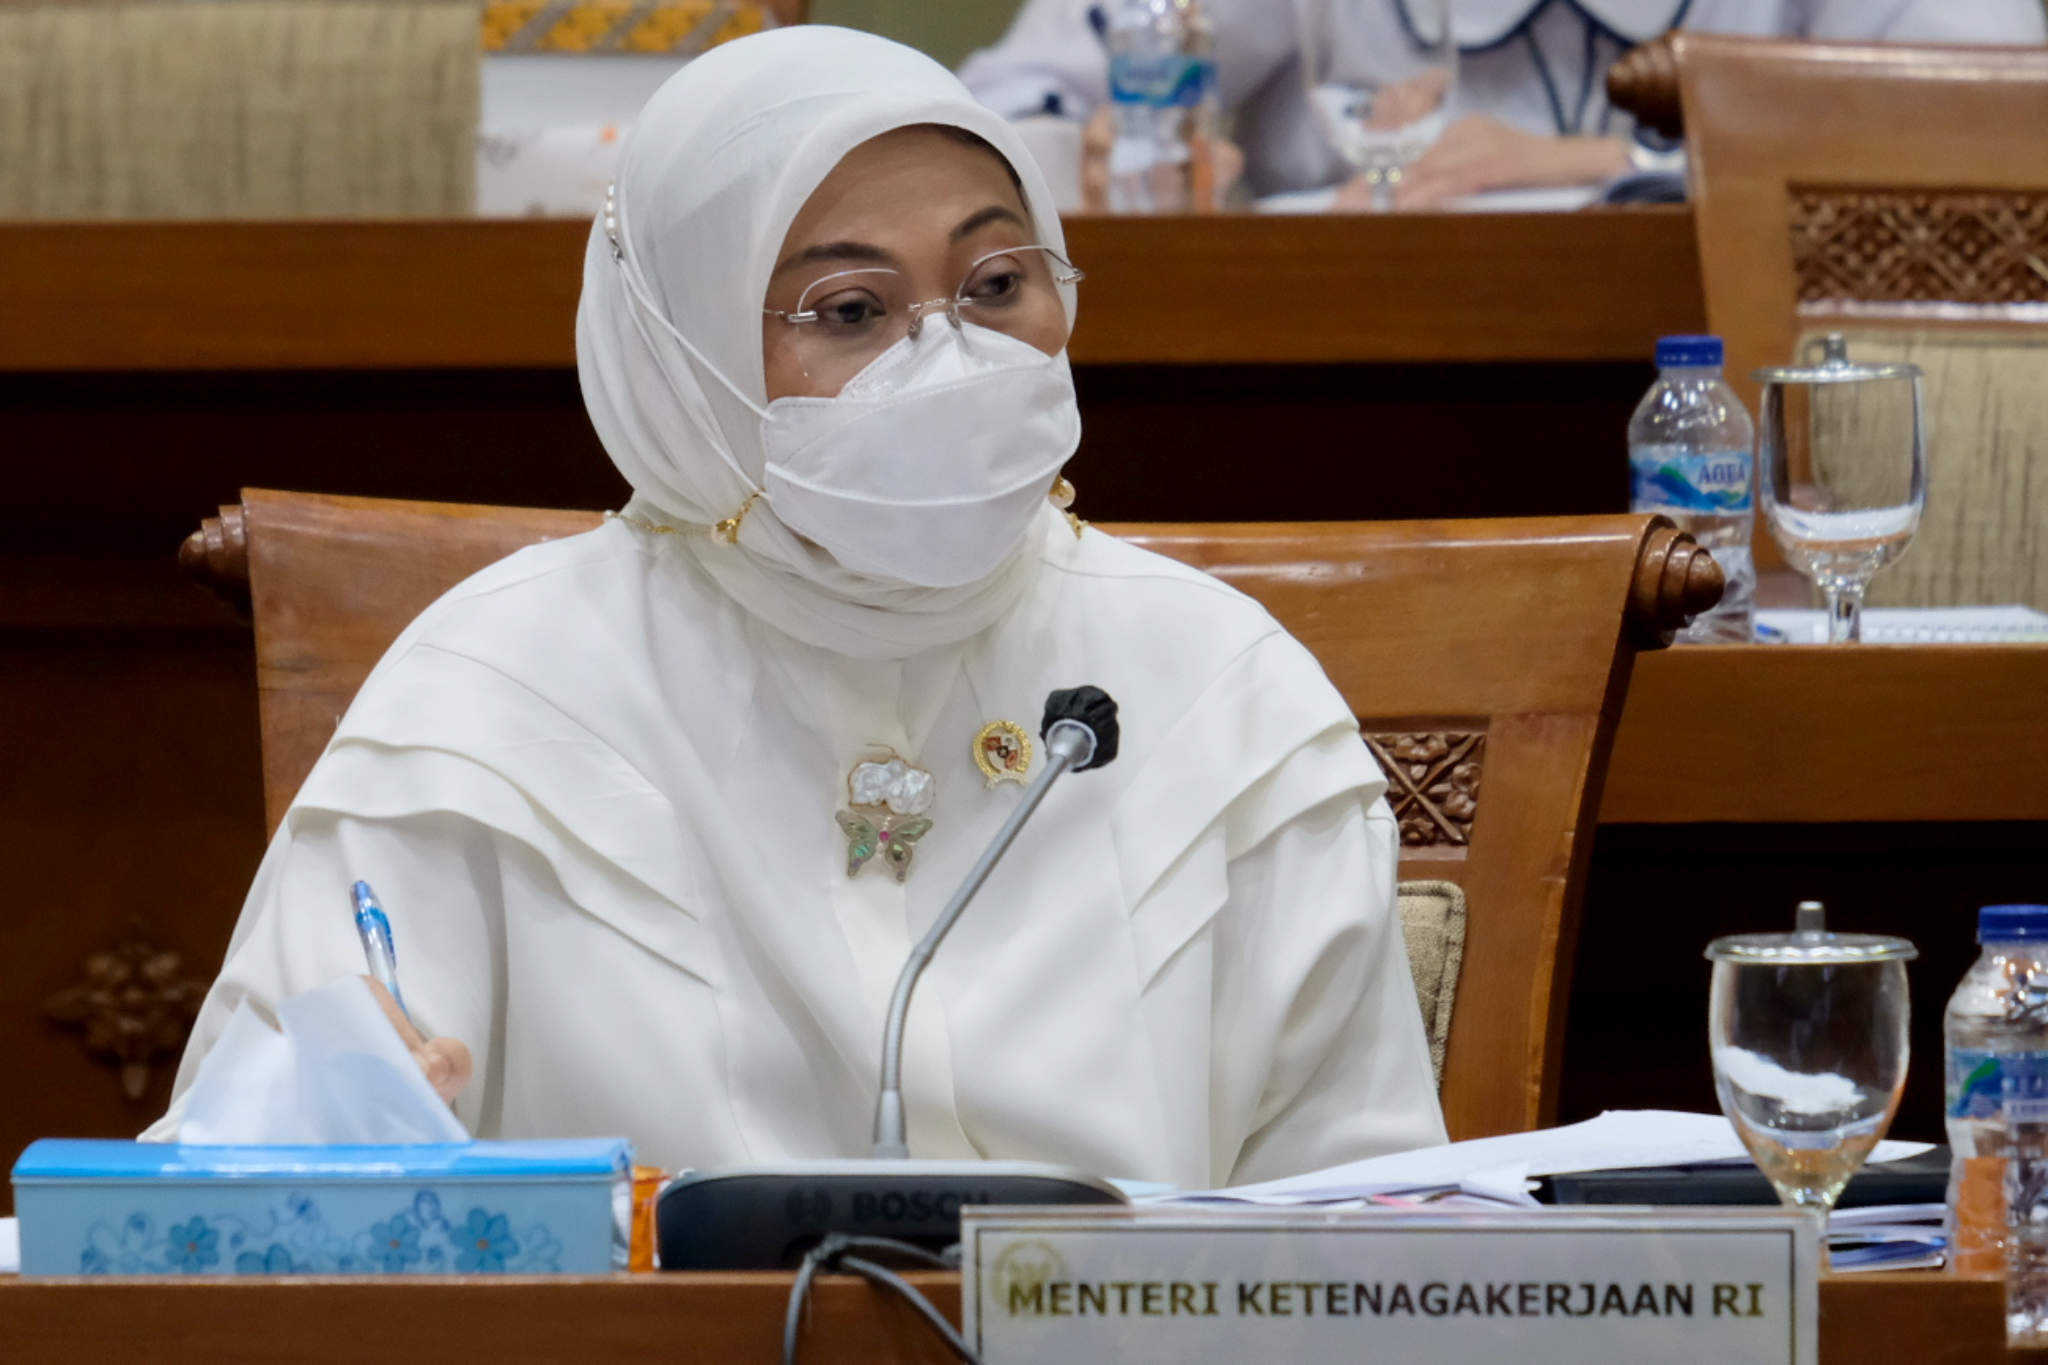 <p>Menteri Ketenagakerjaan, Ida Fauziyah saat mengikuti rapat kerja dengan komisi IX DPR di kompleks Parlemen, Senayan, Jakarta, Senin, 24 Mei 2021. Foto: Ismail Pohan/TrenAsia</p>
